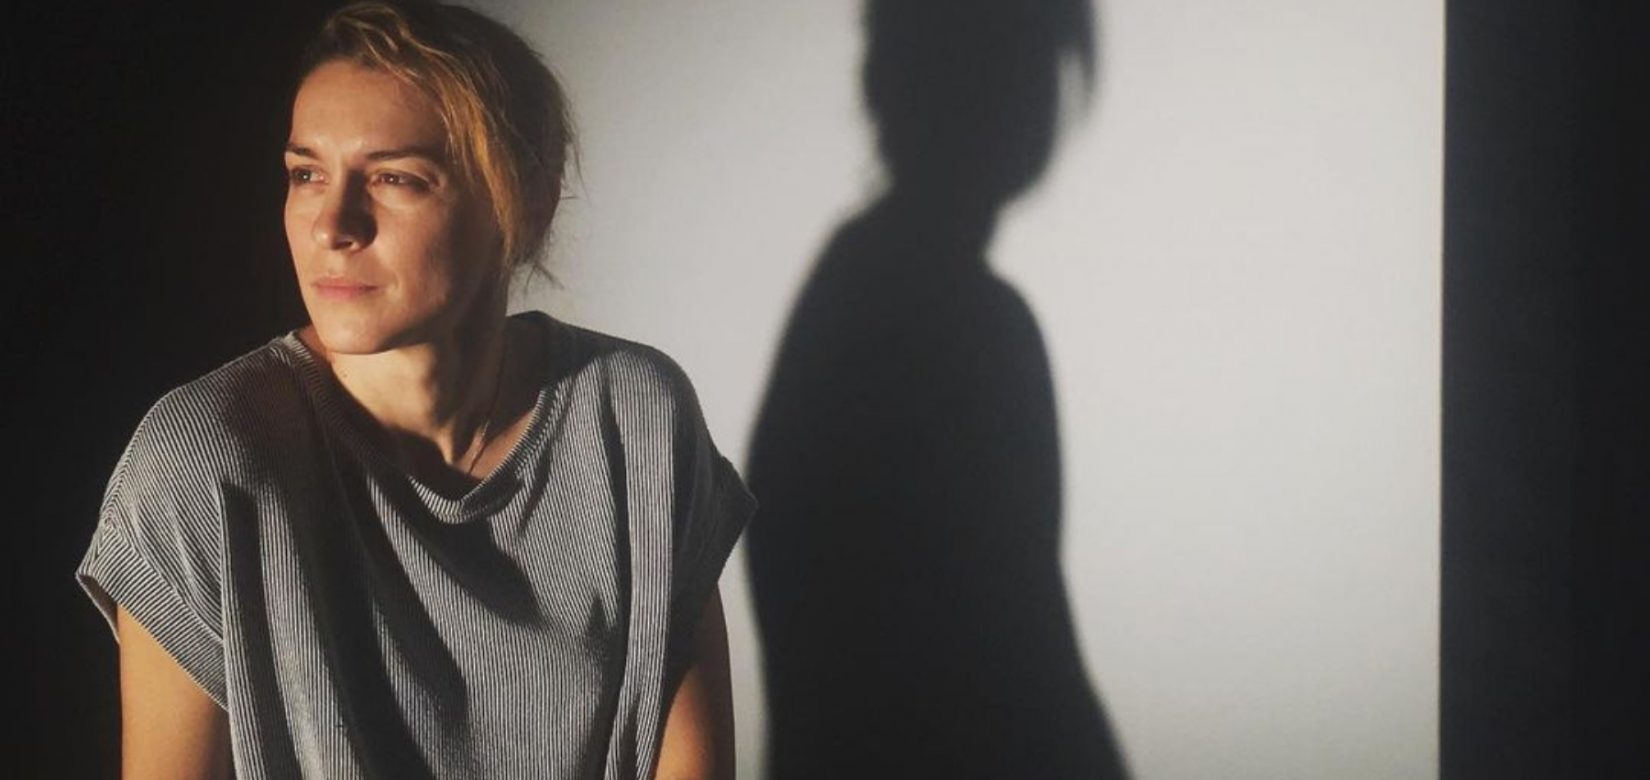 Θύμα ξυλοδαρμού η ηθοποιός Γιούλικα Σκαφιδά, πέρασε τη νύχτα στο αυτόφωρο - Μιλά για γυναικεία κακοποίηση